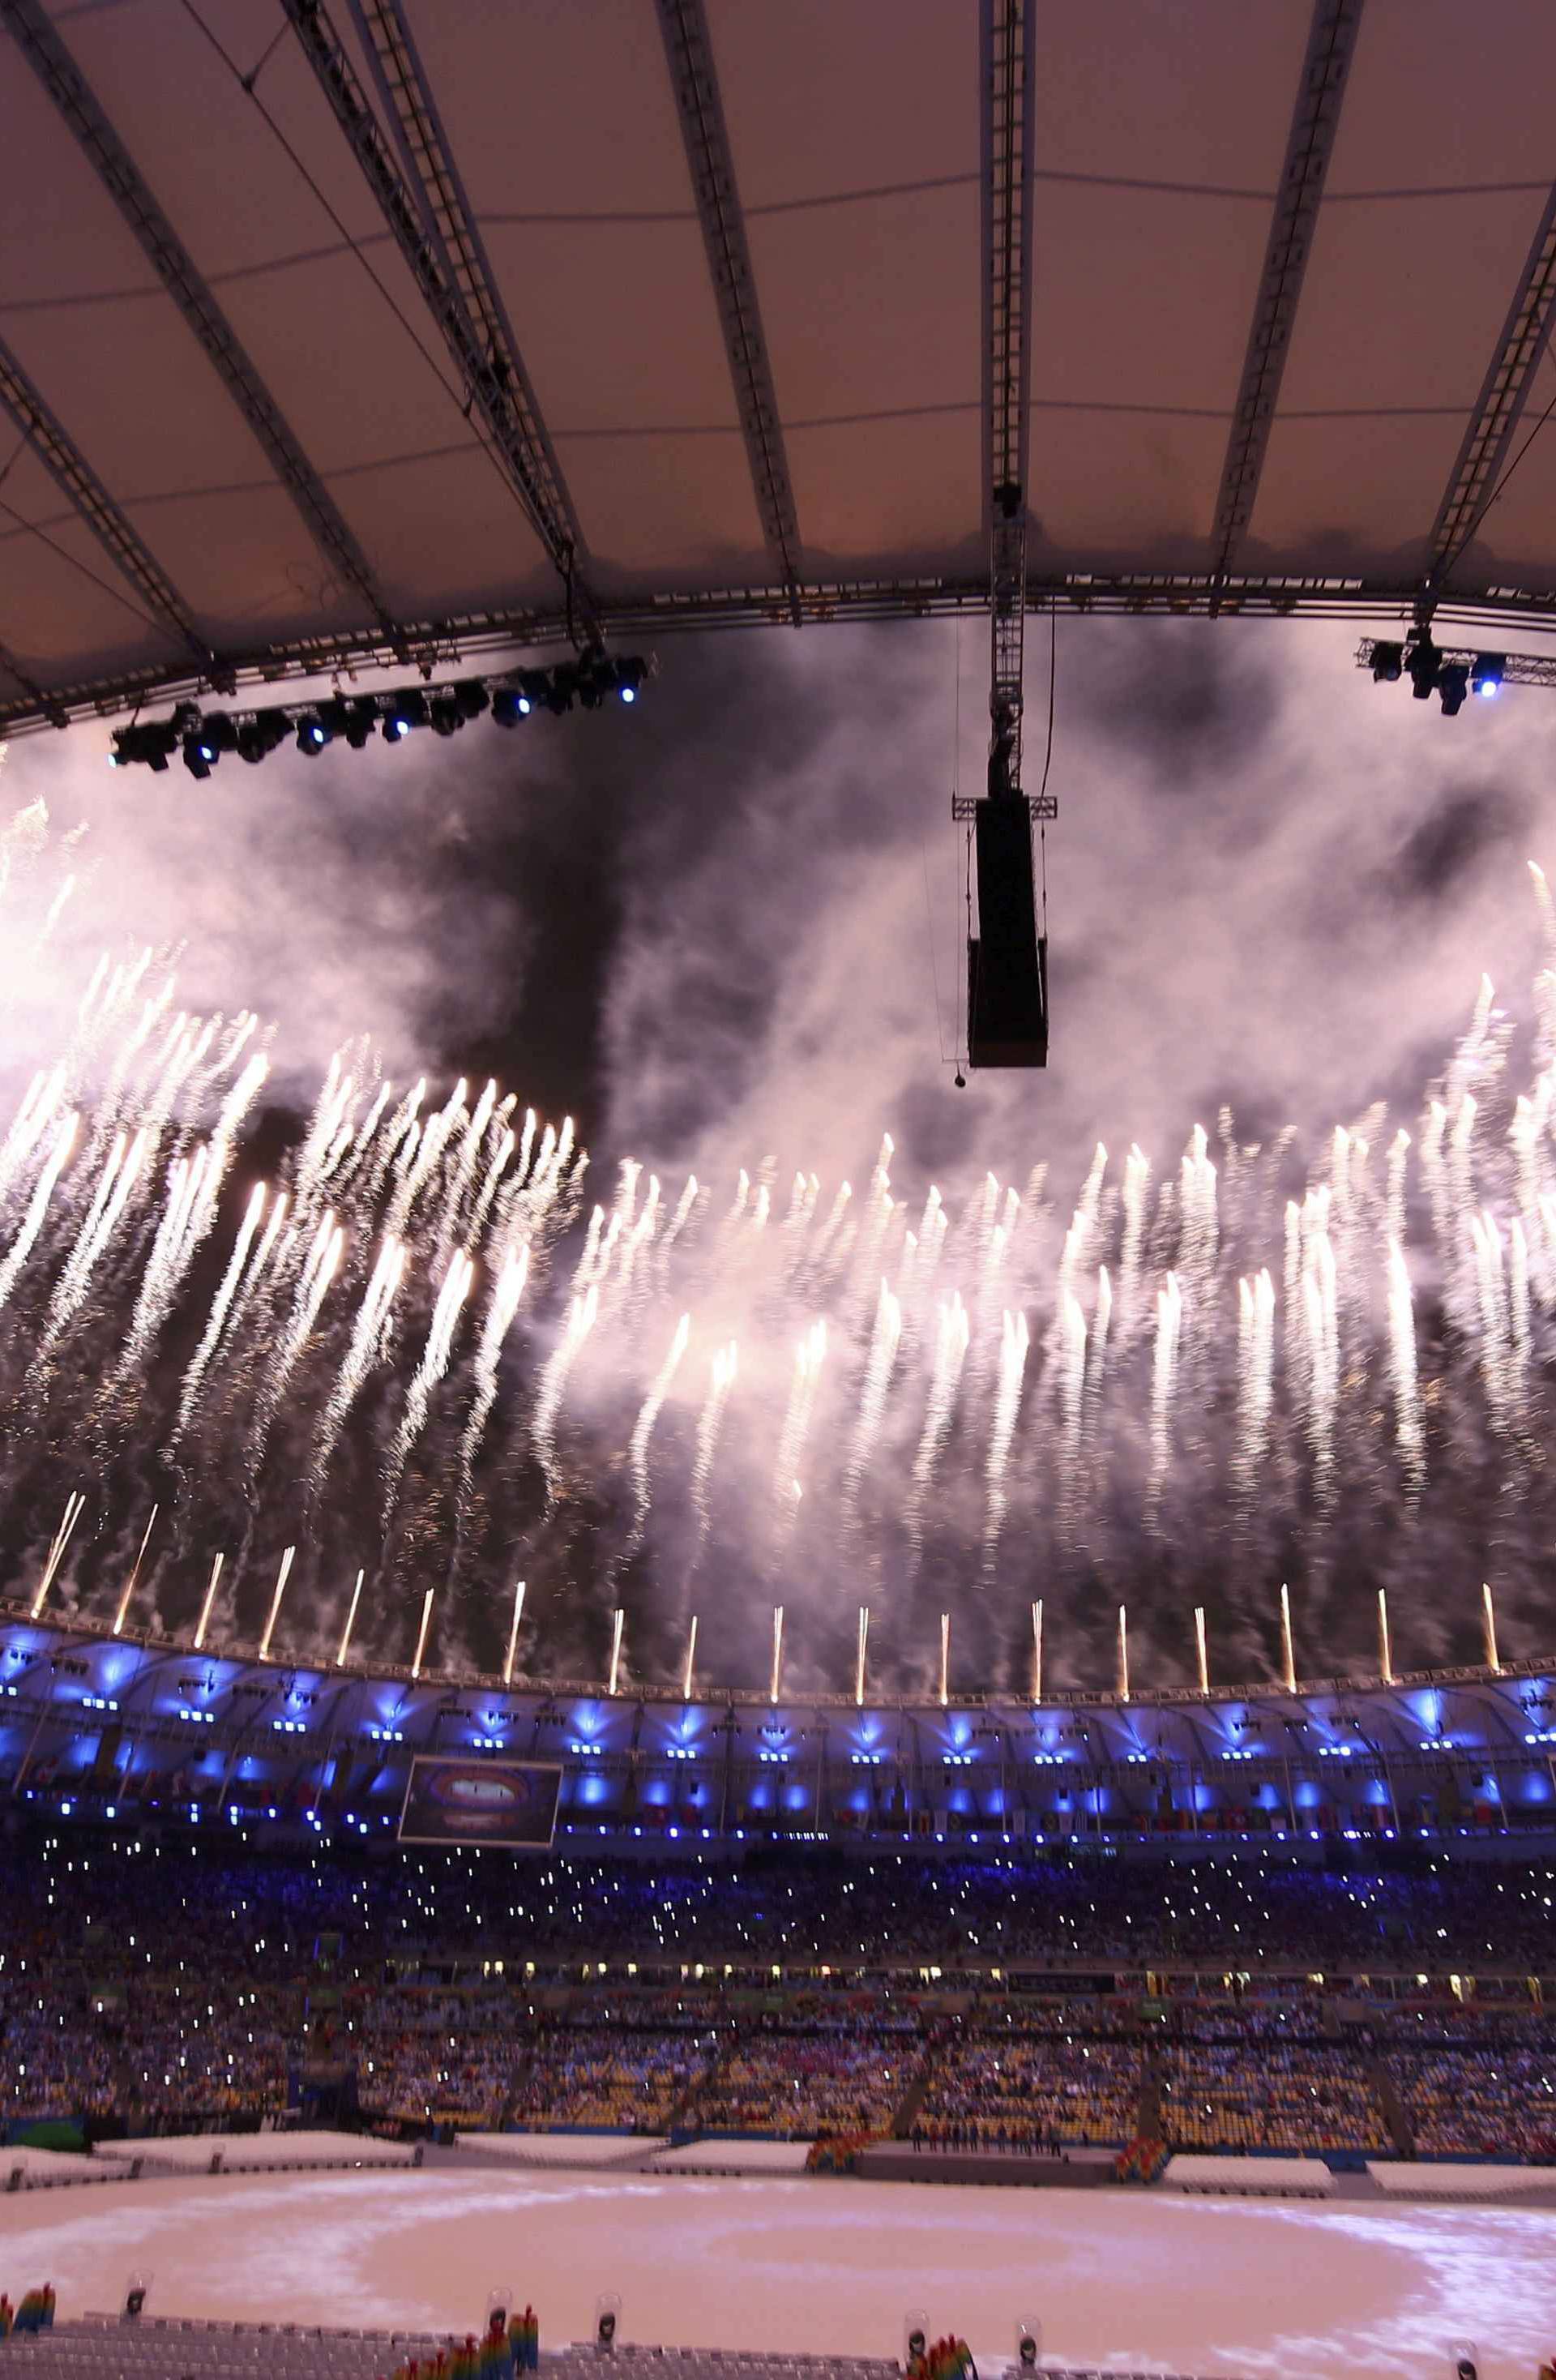 2016 Rio Olympics - Closing ceremony